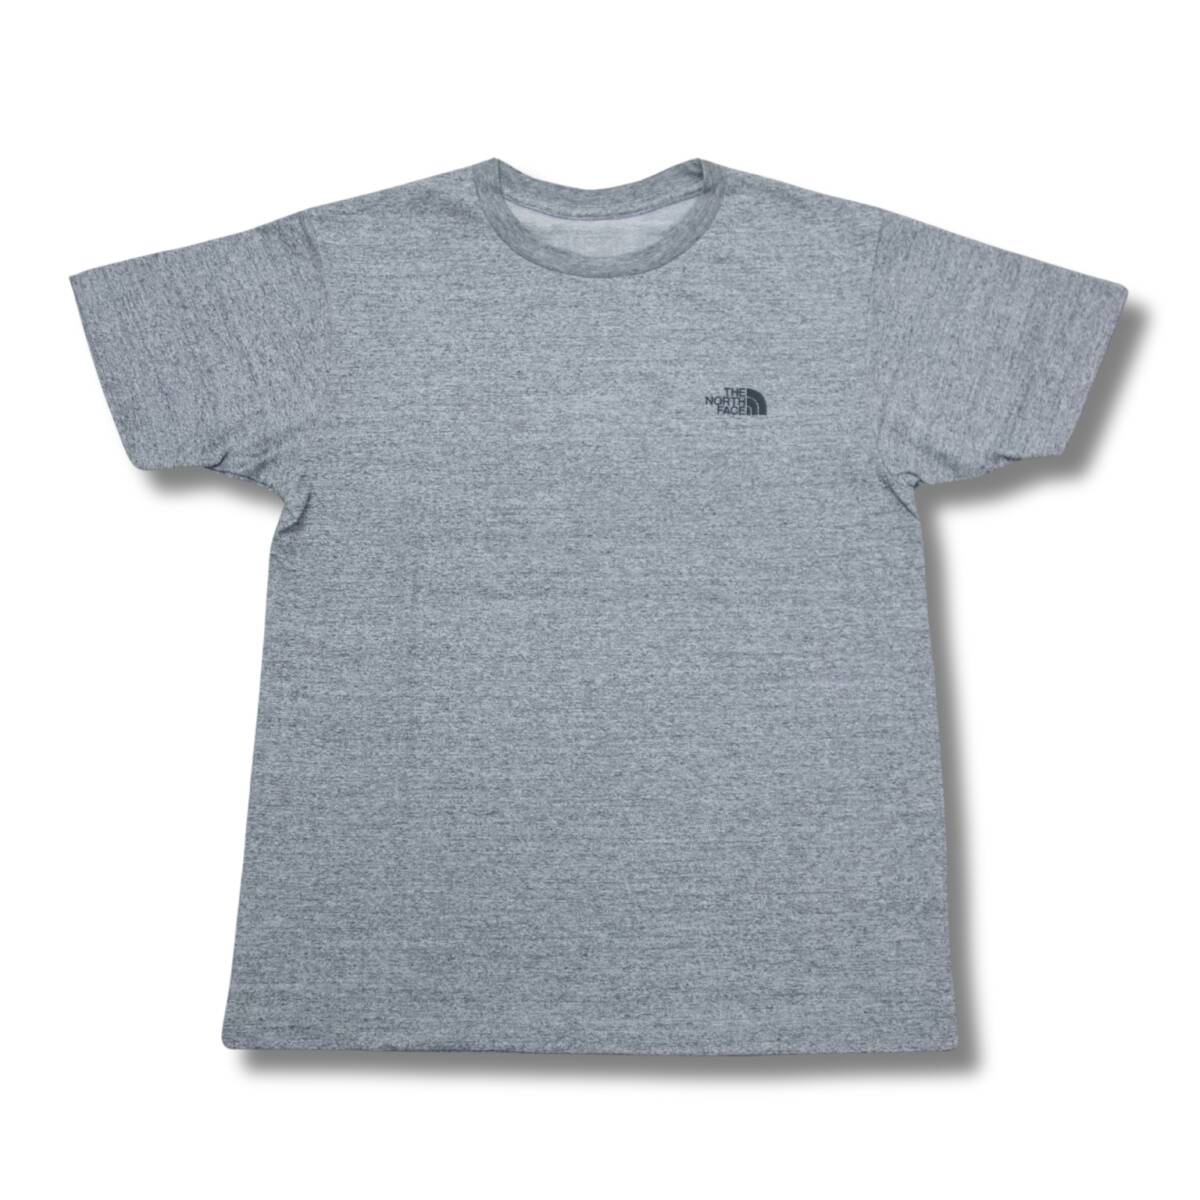 即決☆ノースフェイス スクエアー ロゴ 半袖Tシャツ Z/Lサイズ グレー 灰色 送料込み スクエア ロゴ 速乾